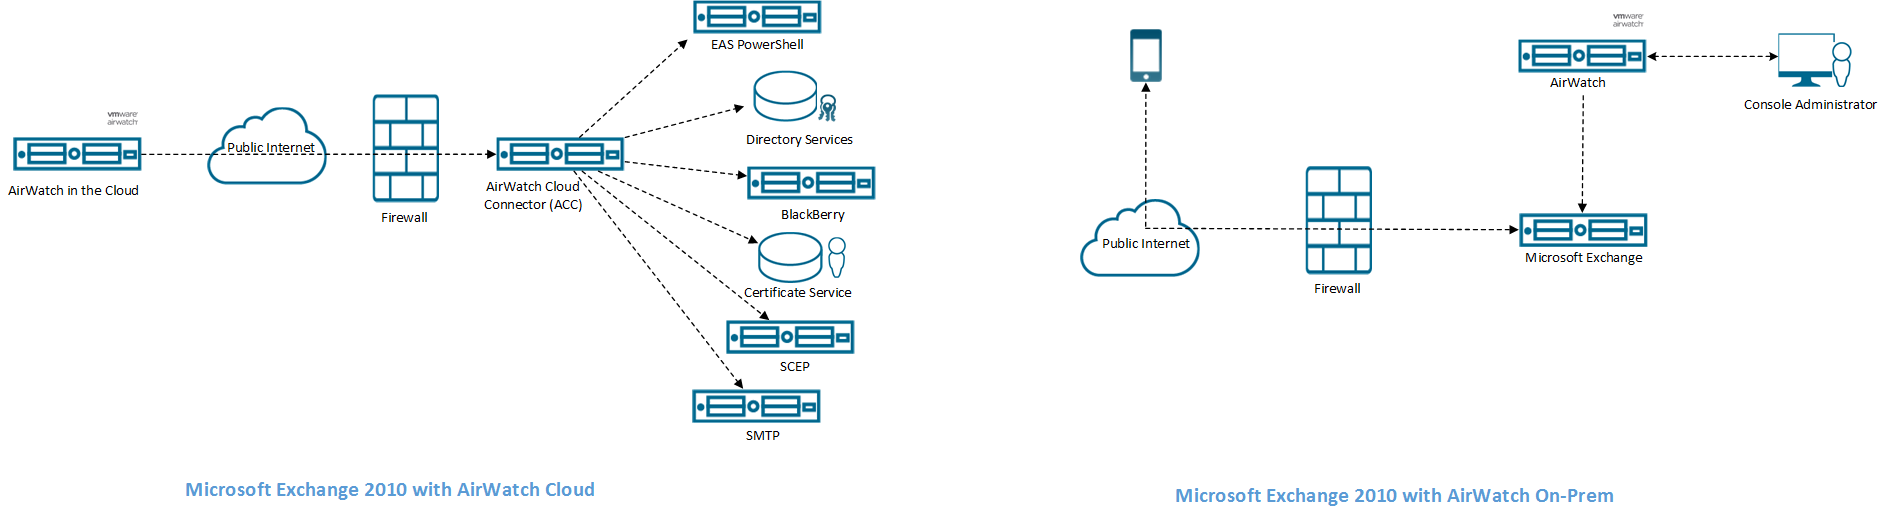 Modelo PowerShell Microsoft 2010 Exchange implementado en la nube y en las instalaciones